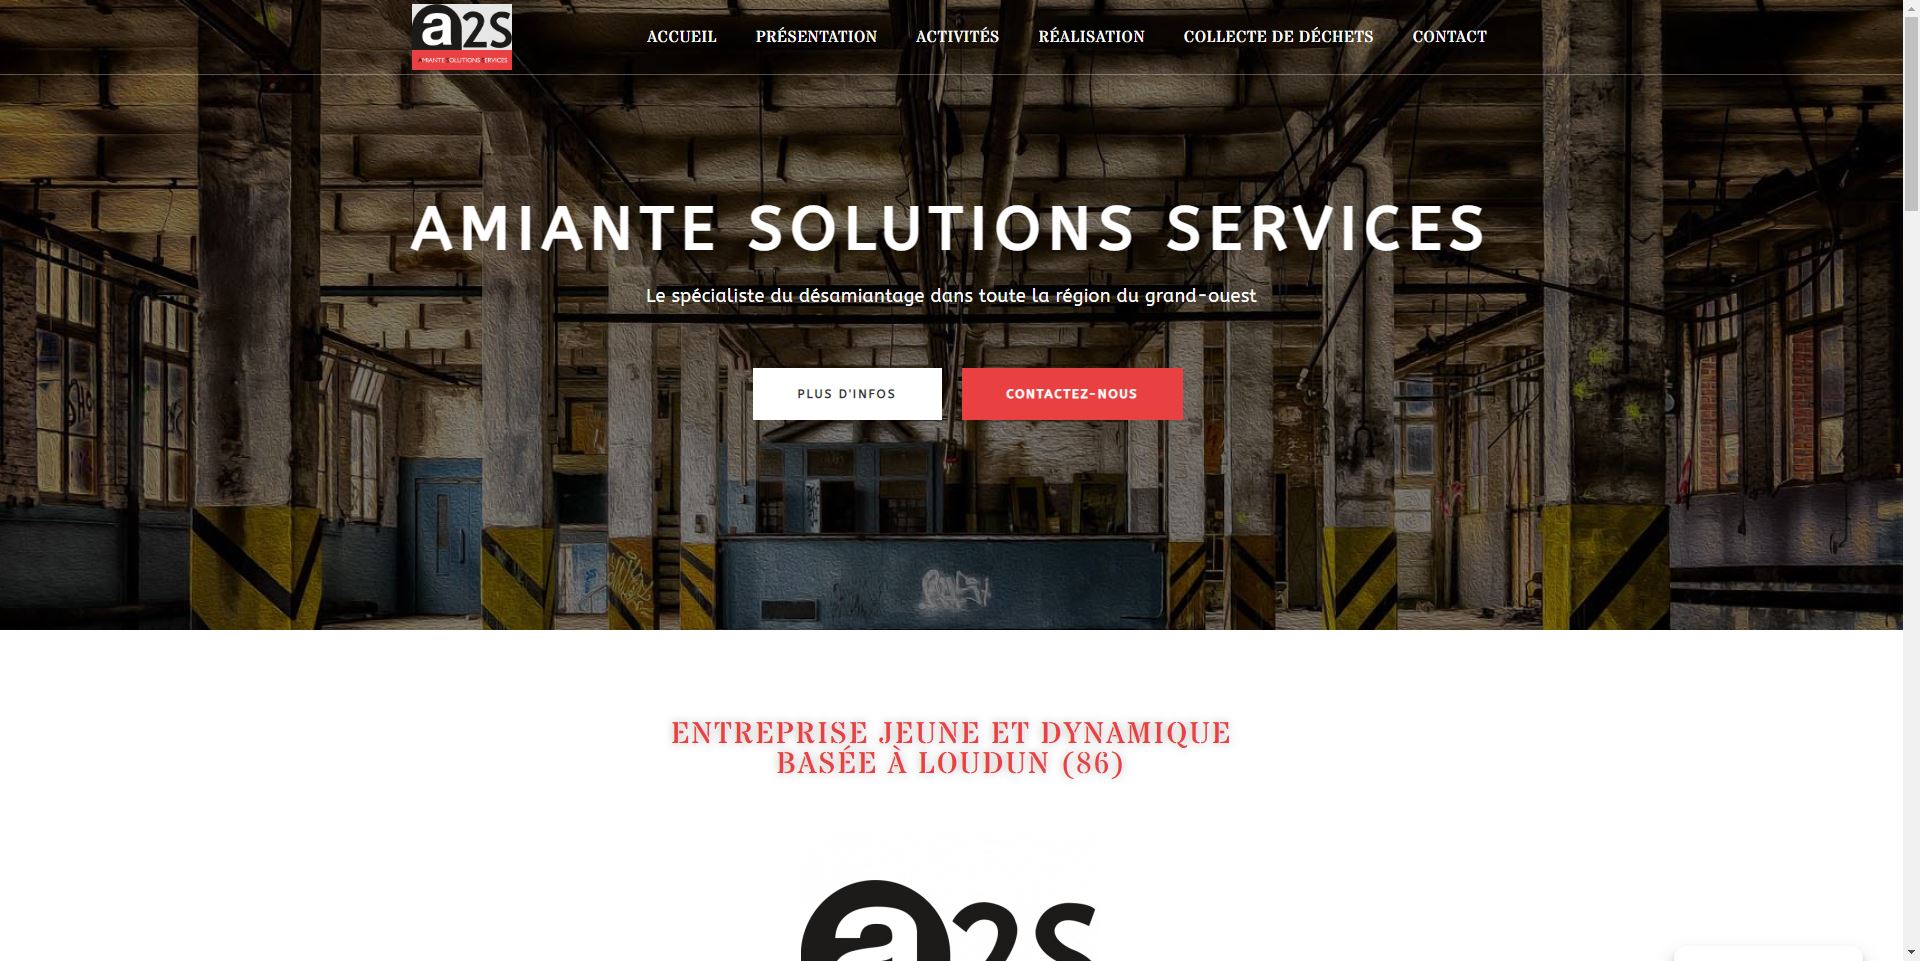 Lire la suite à propos de l’article A2S Amiante solutions services